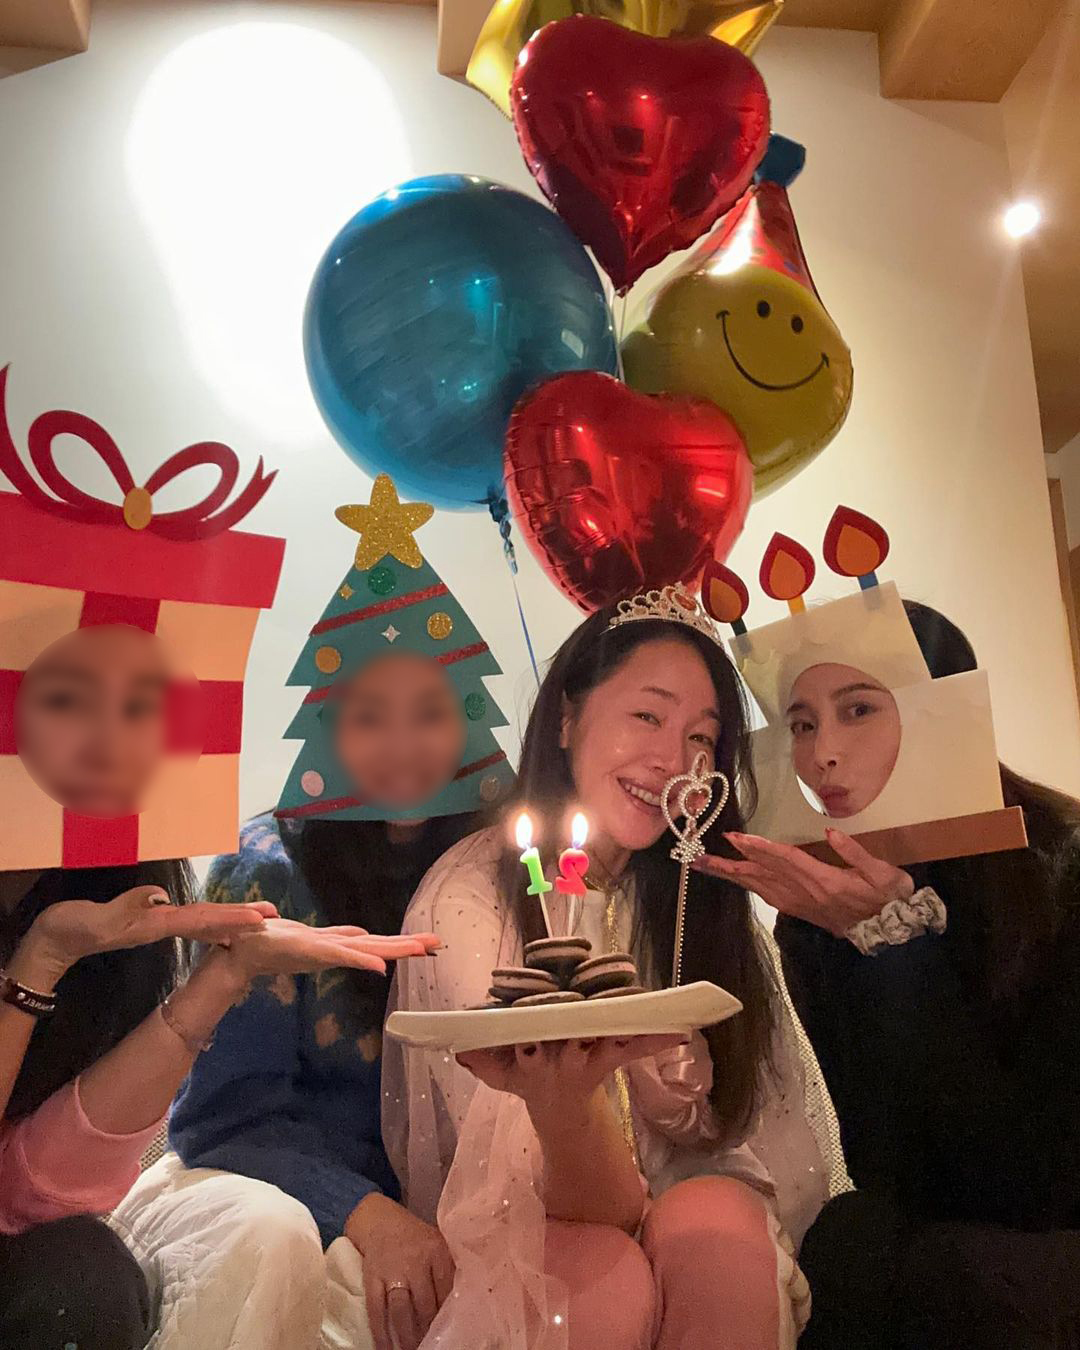 45歳オム・ジウォン、オ・ユナと誕生パーティー…親友ソン・イェジンも祝福コメント